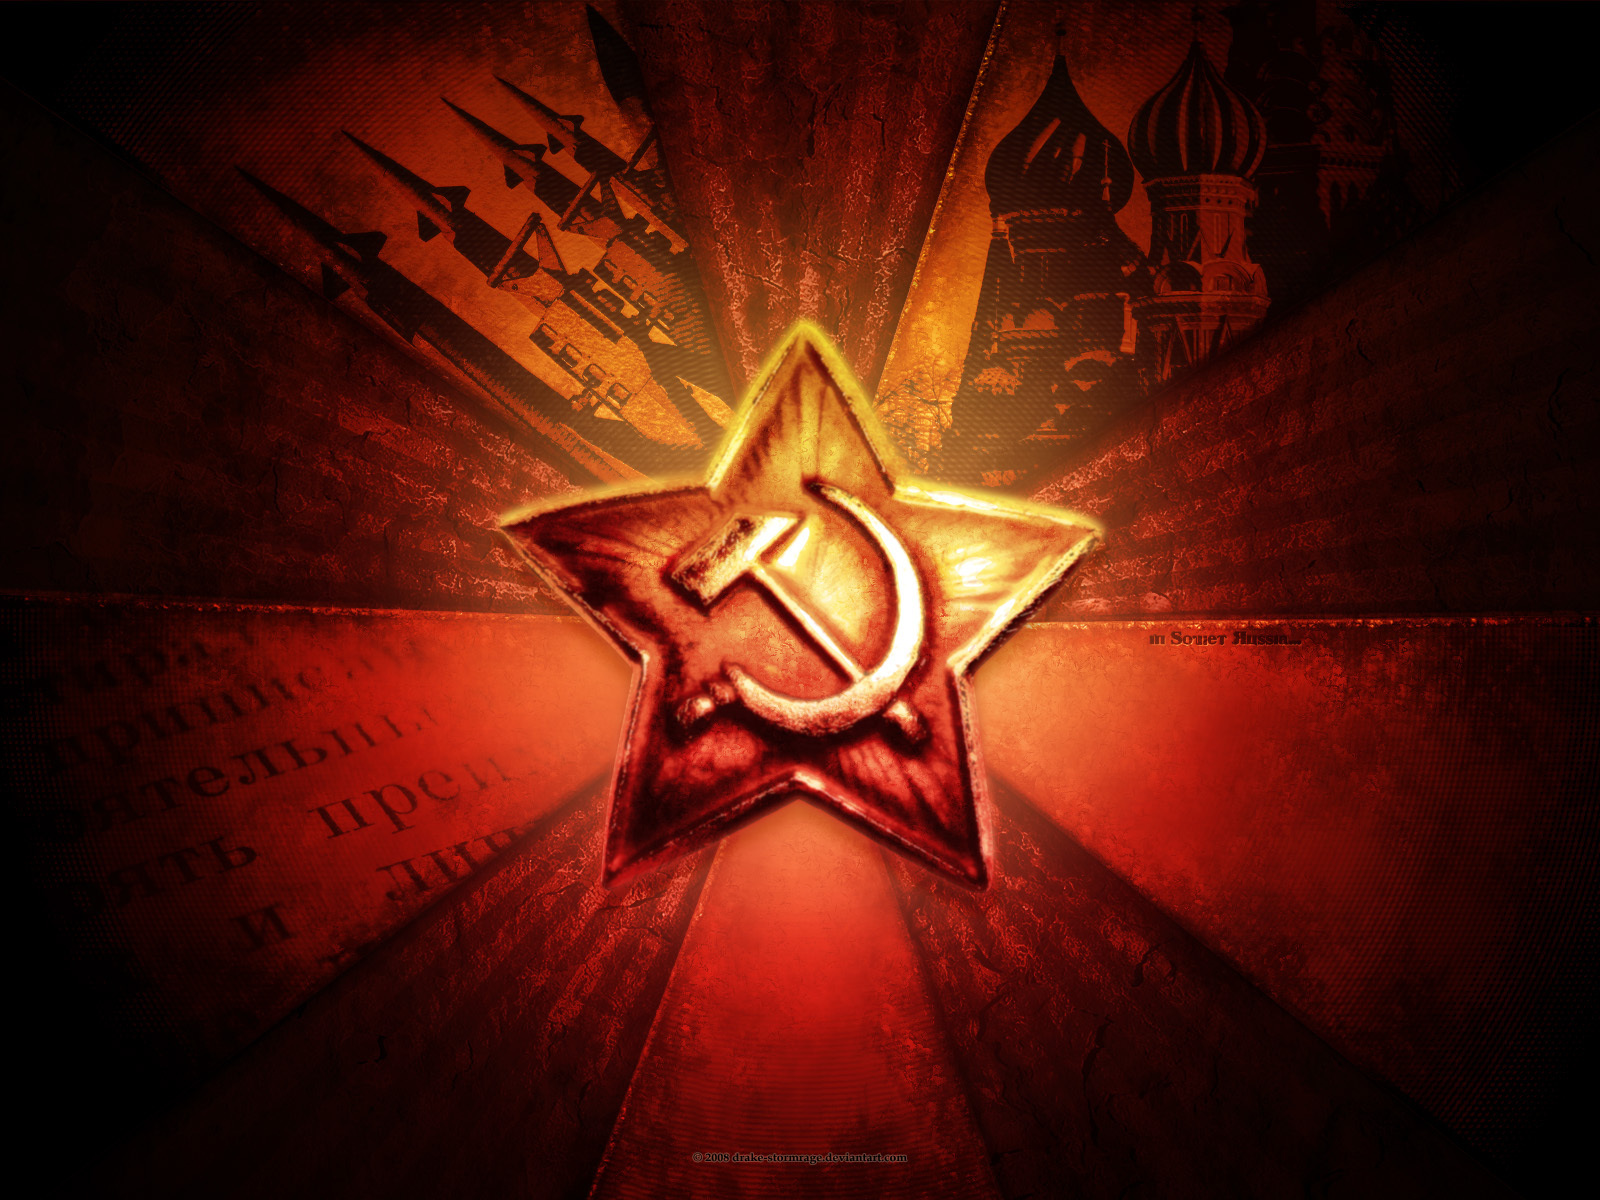 Soviet Russia Wallpaper